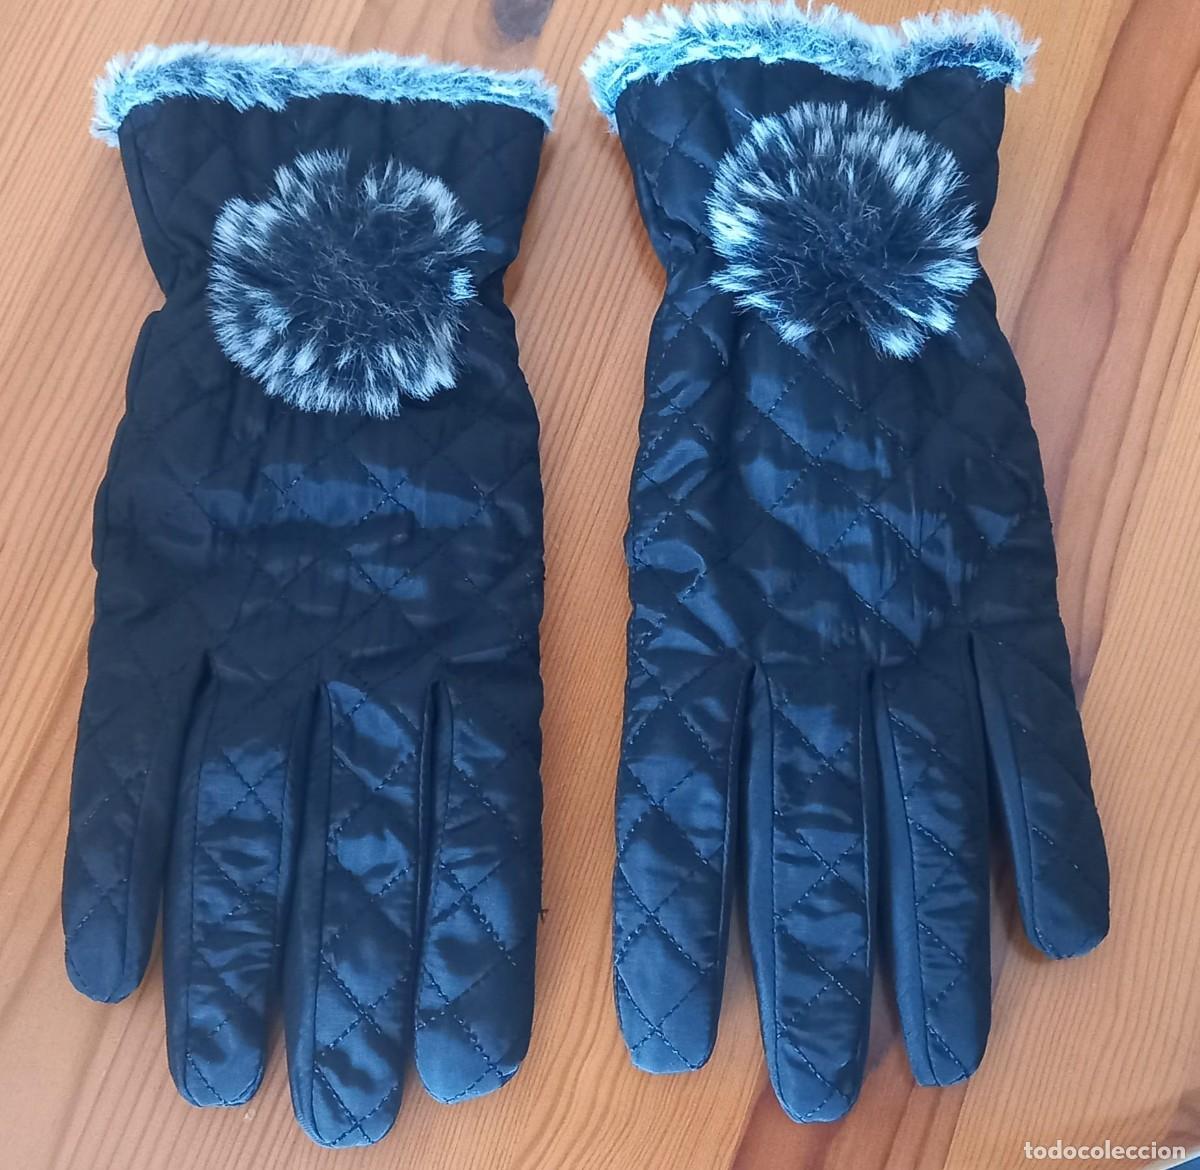 guantes mujer negros impermeables - Compra venta en todocoleccion